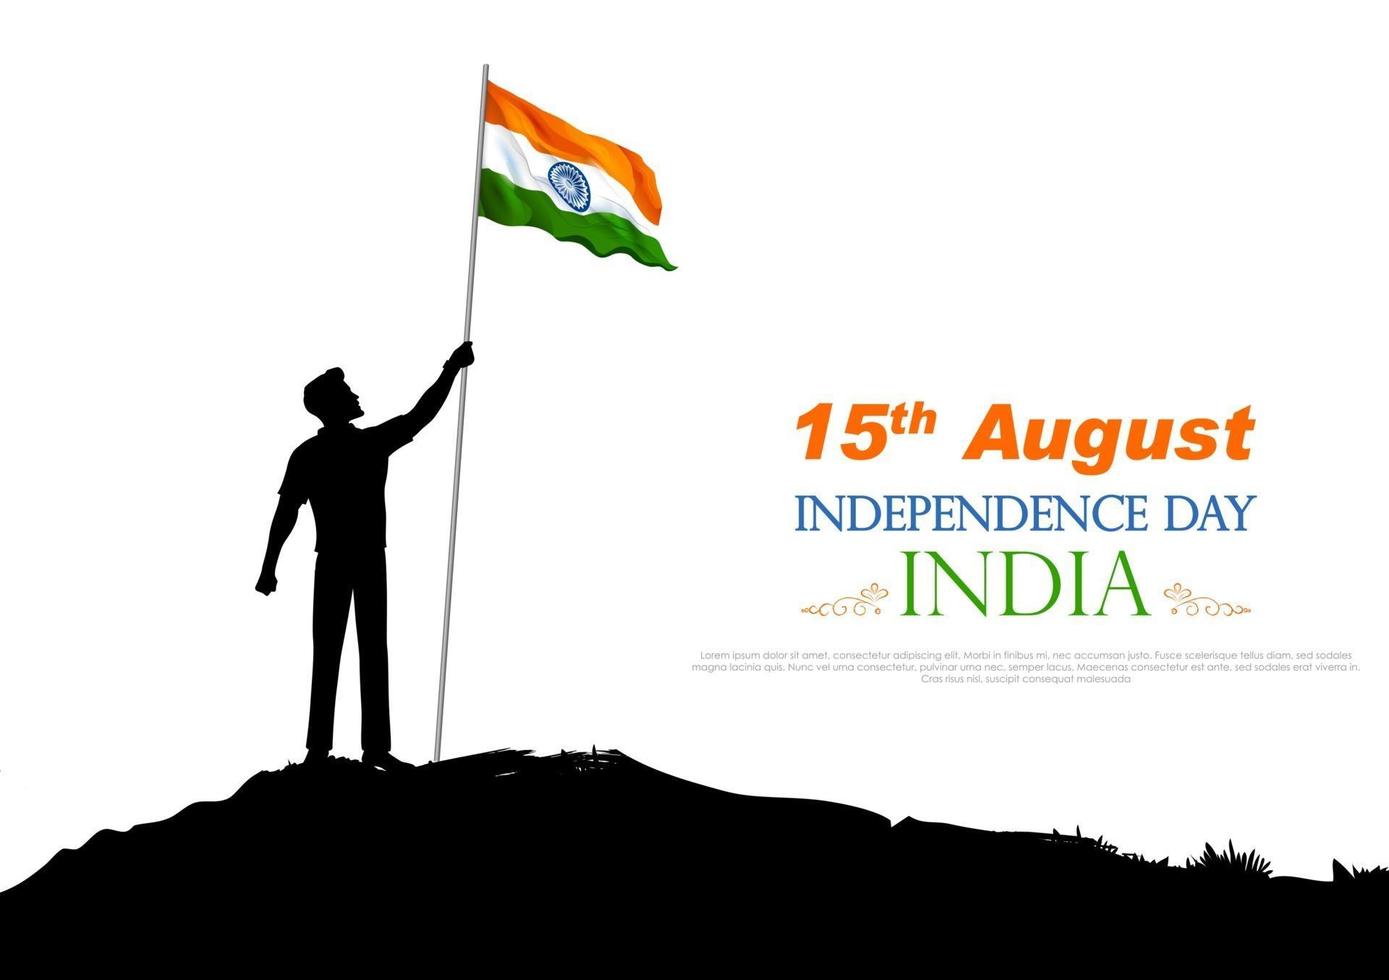 homme tenant un drapeau indien pour la joyeuse fête de l'indépendance de l'inde vecteur